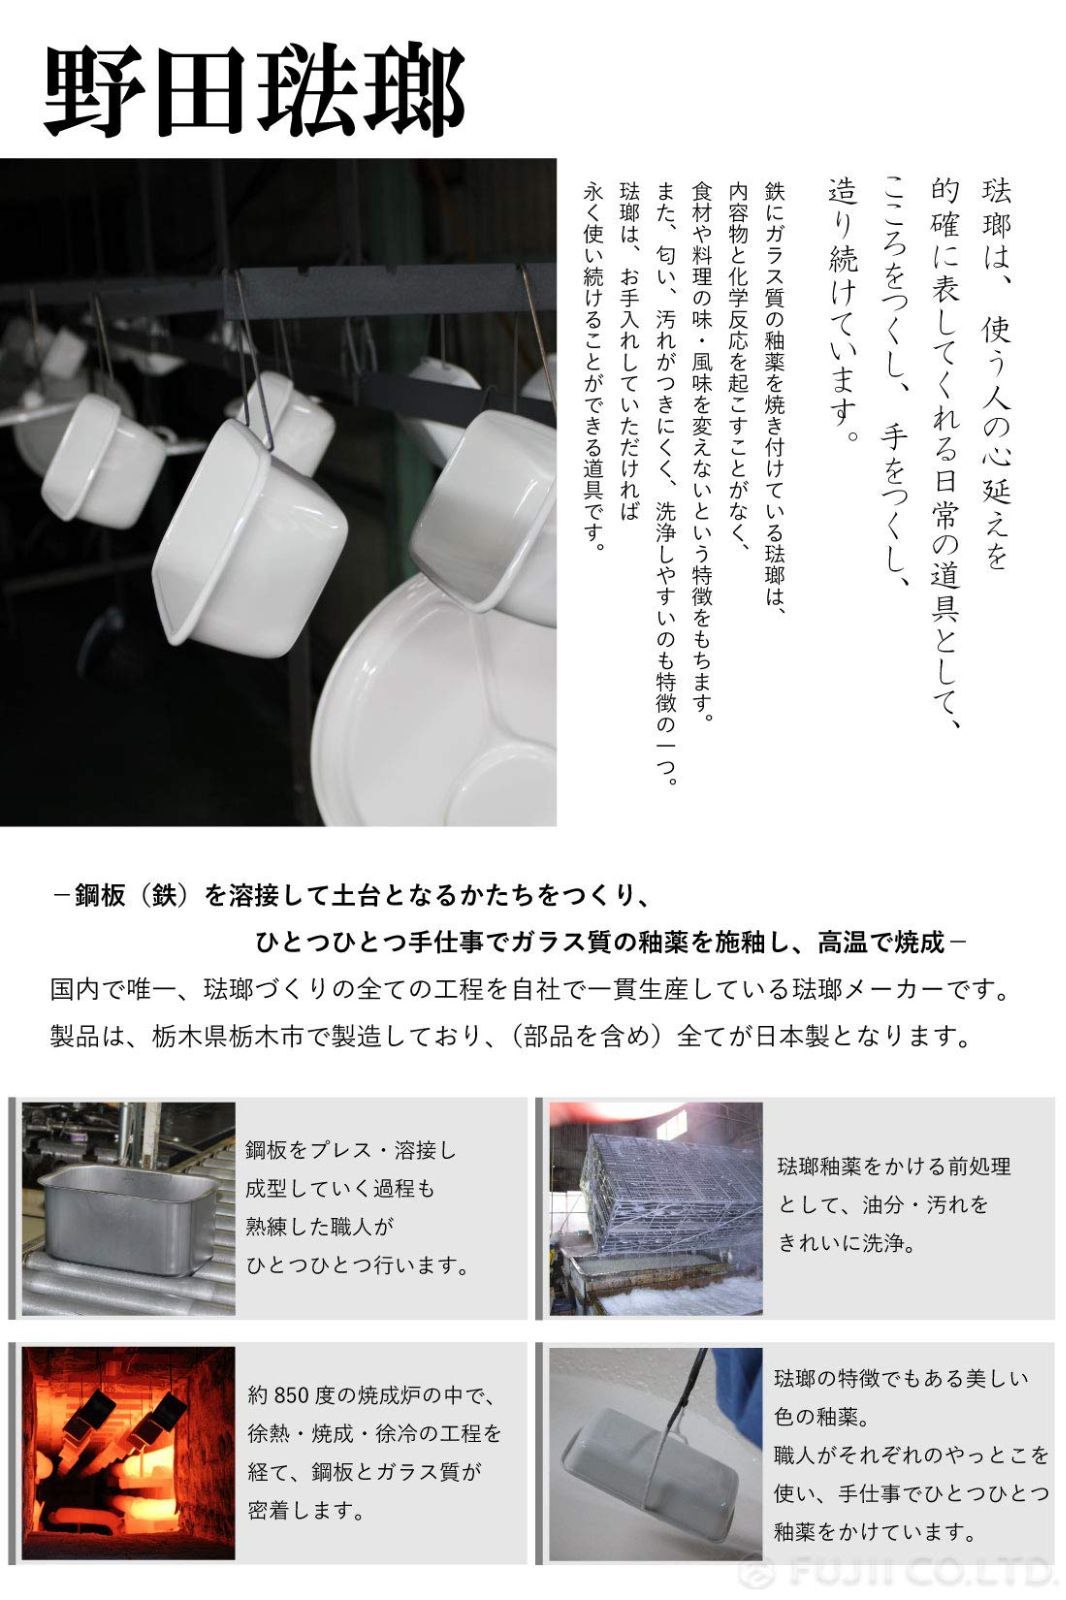 特価商品野田琺瑯 NOMAKU キャセロール 20cm ブラック 日本製 NOM-20TBK - くらし快適ショップ - メルカリ